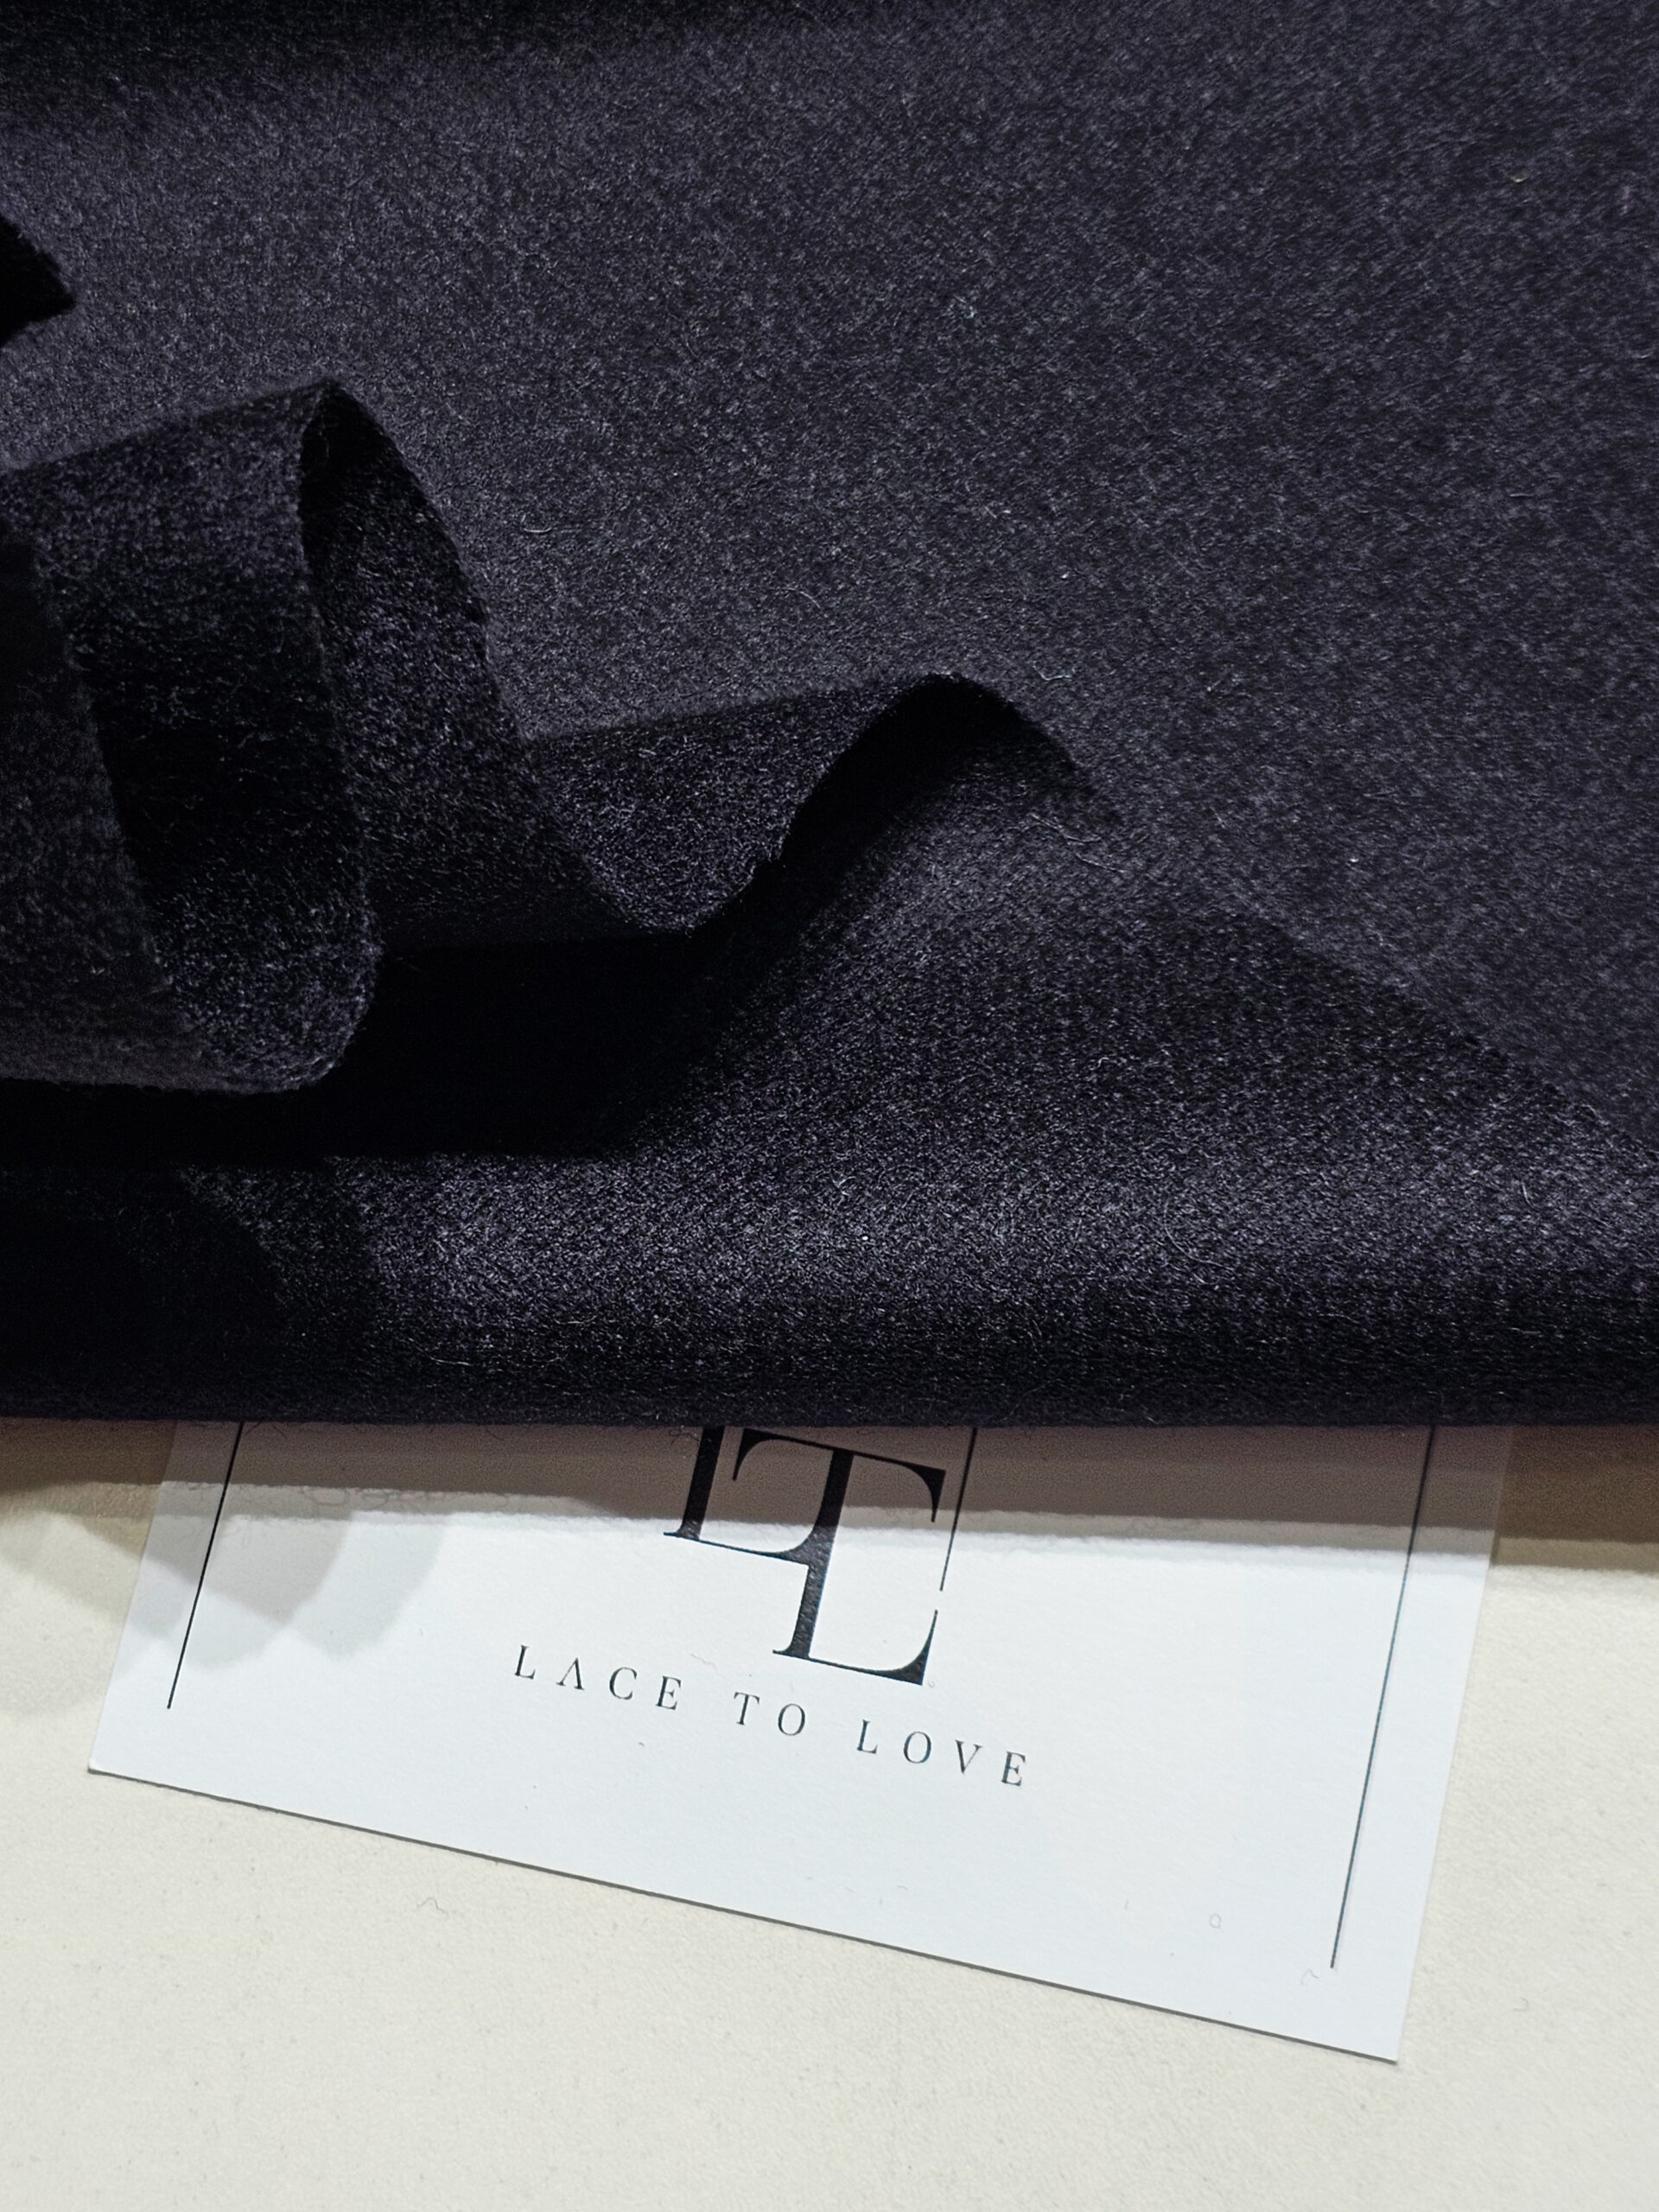 Black pure merino wool fabric